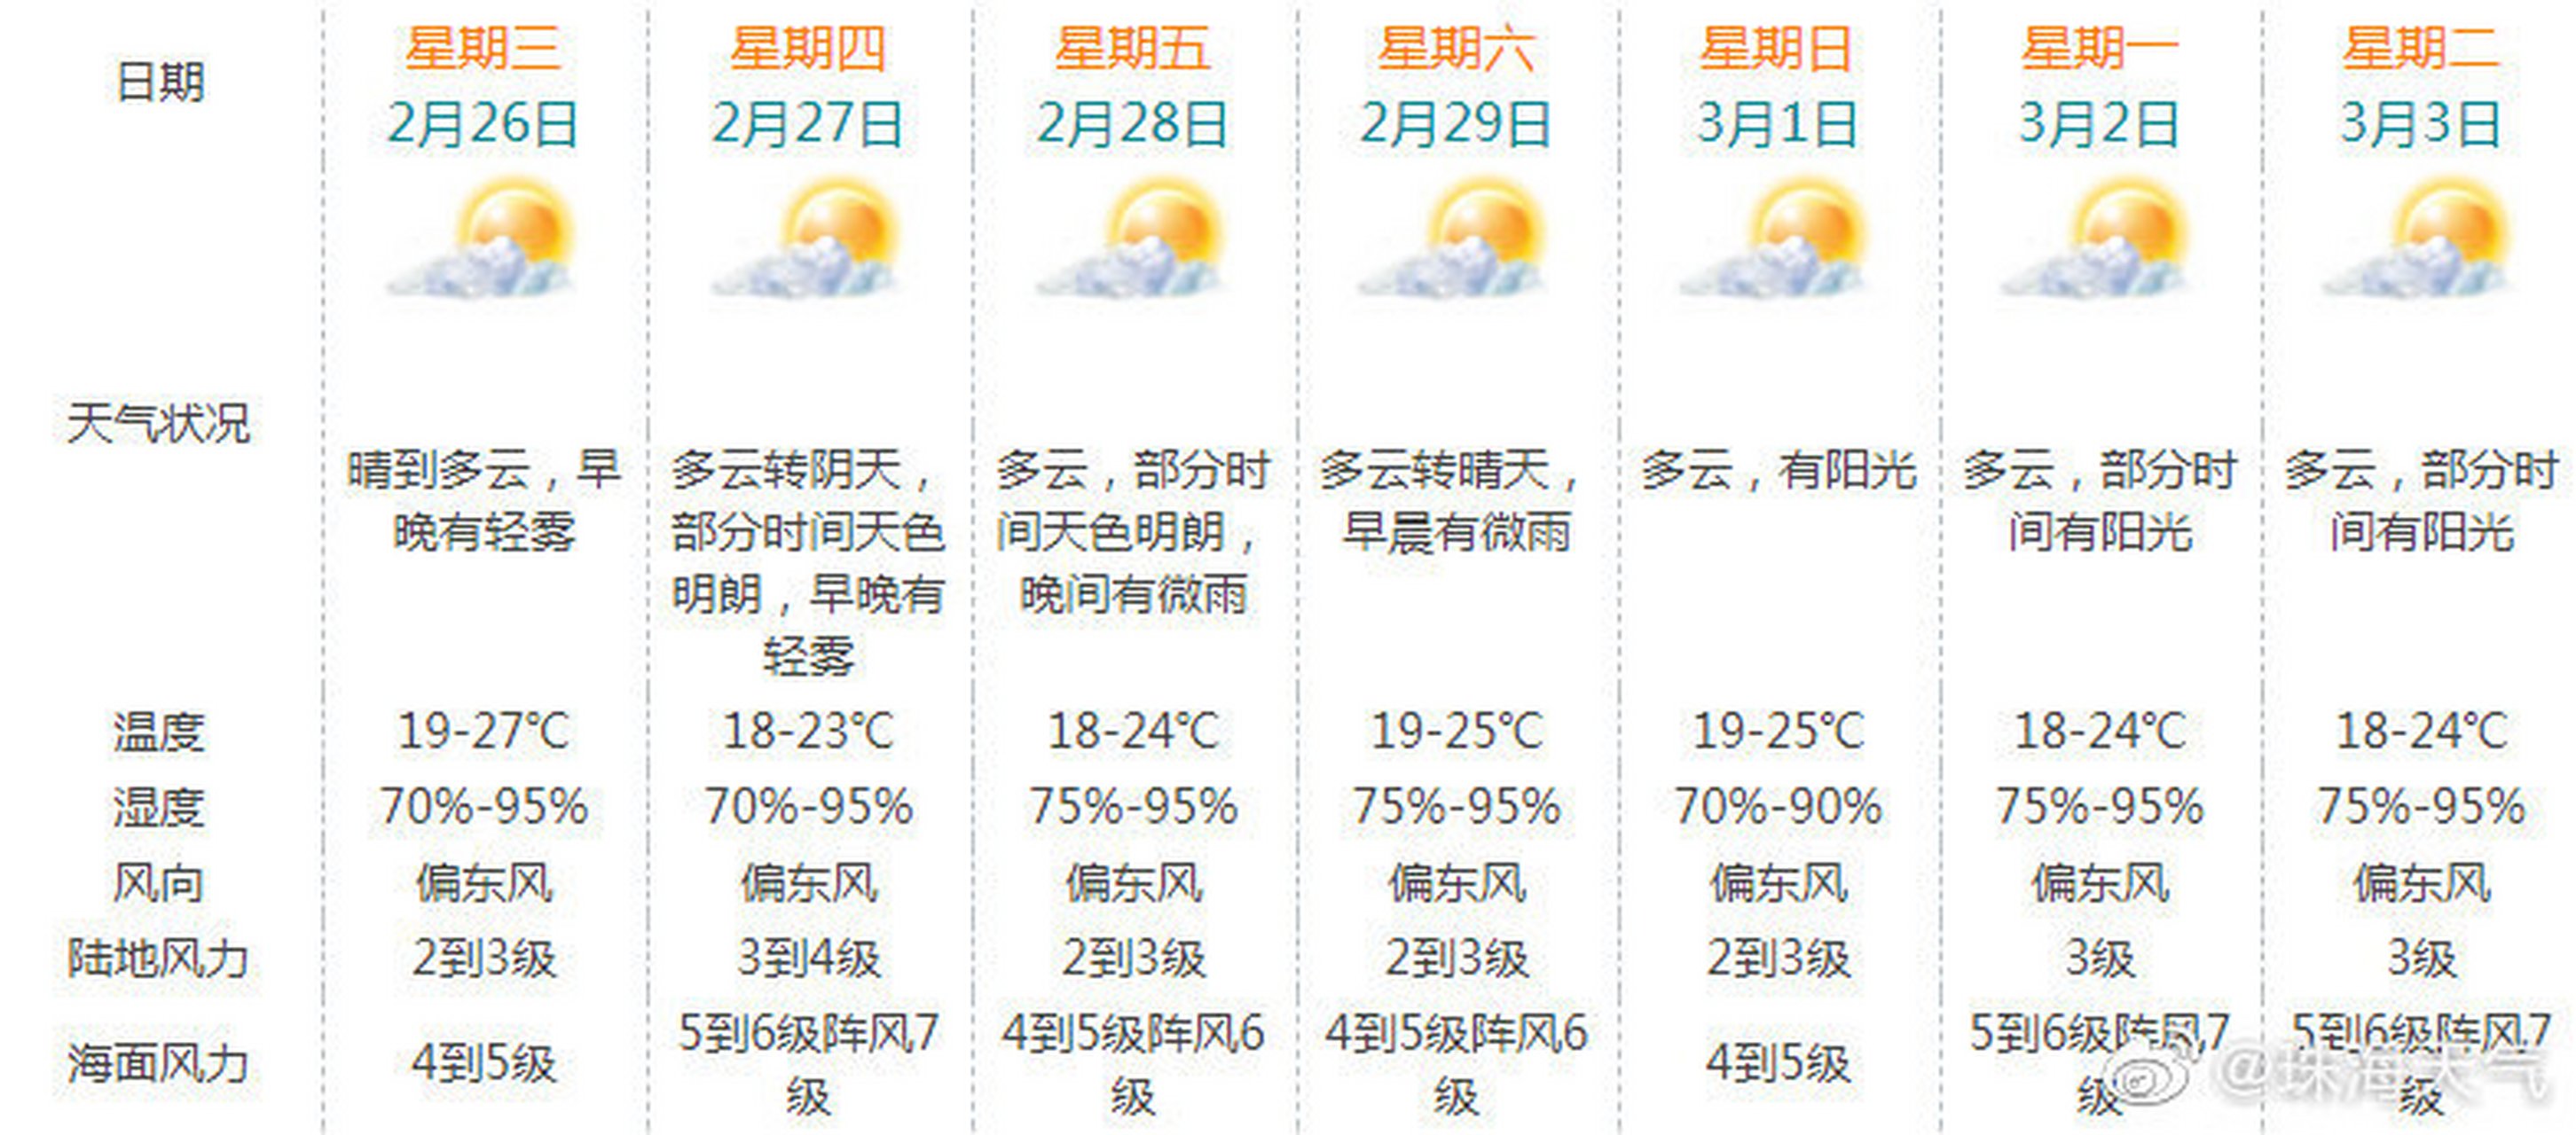 【珠海天气预报】预计未来一周无明显冷空气影响我市,其中明天继续